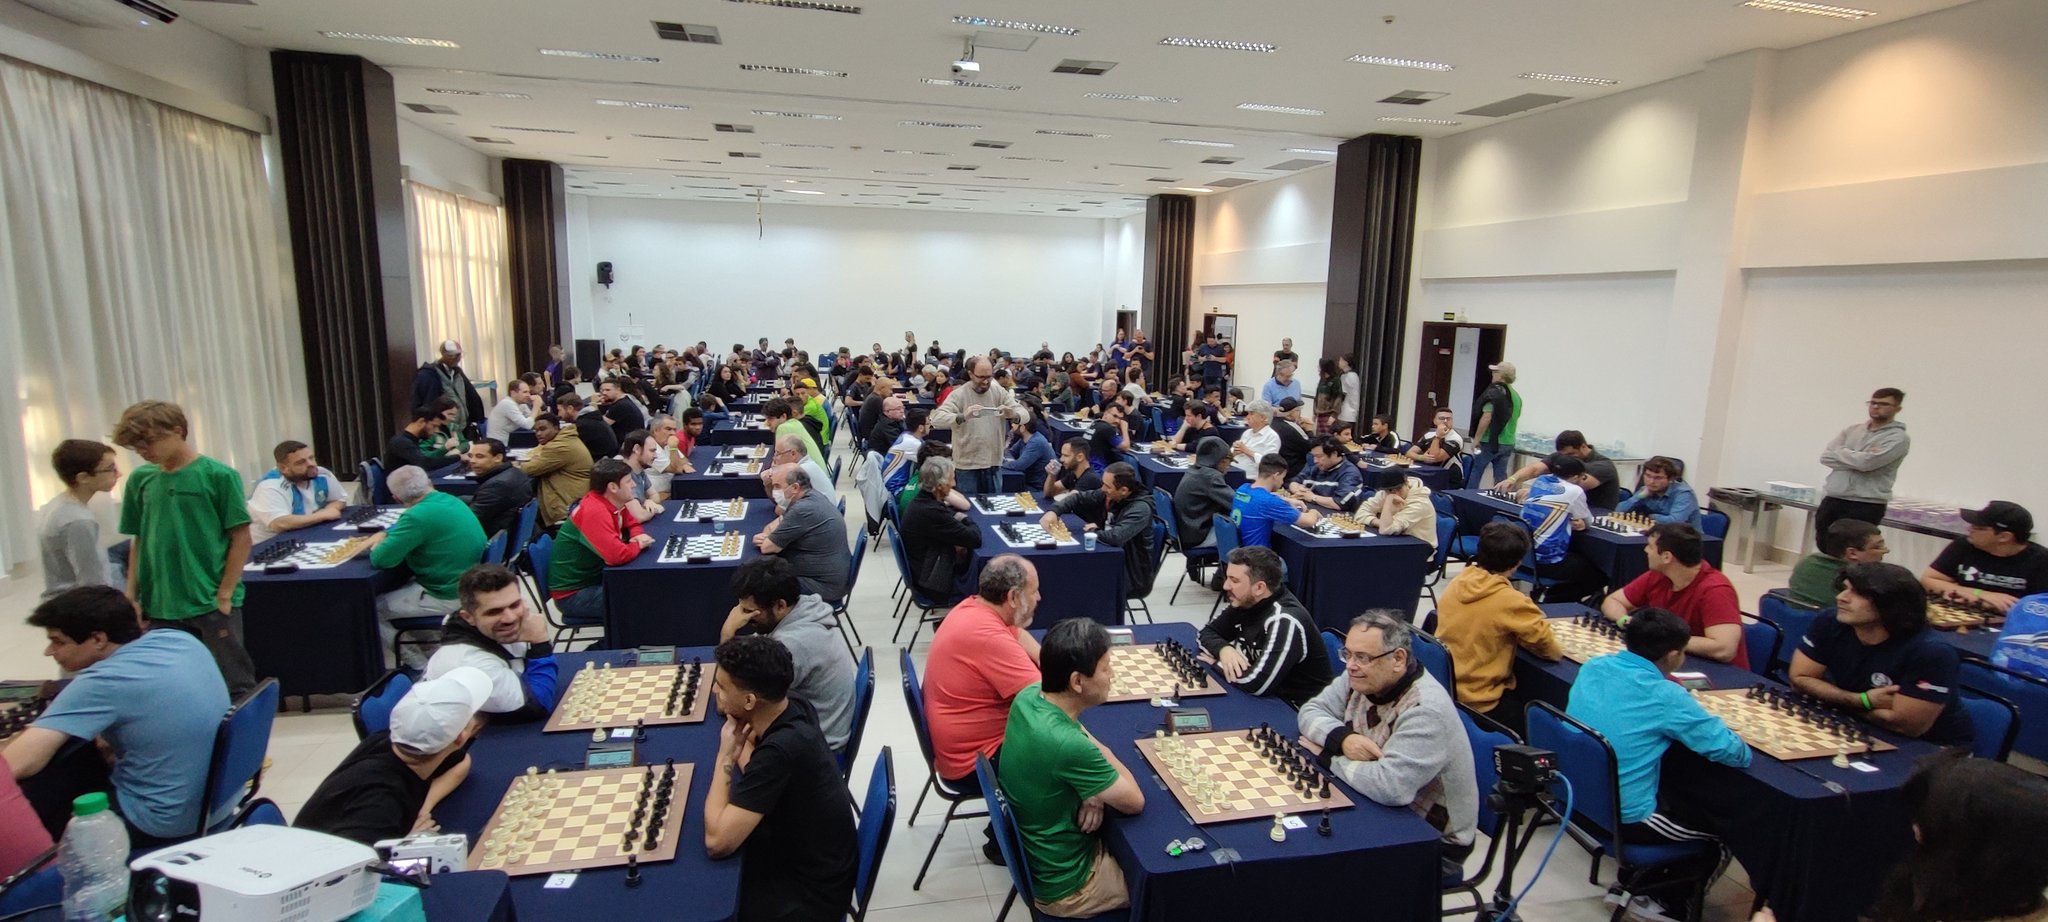 Chess.com Português on X: Hoje tem DOIS CLÁSSICOS no Caiobá Chess